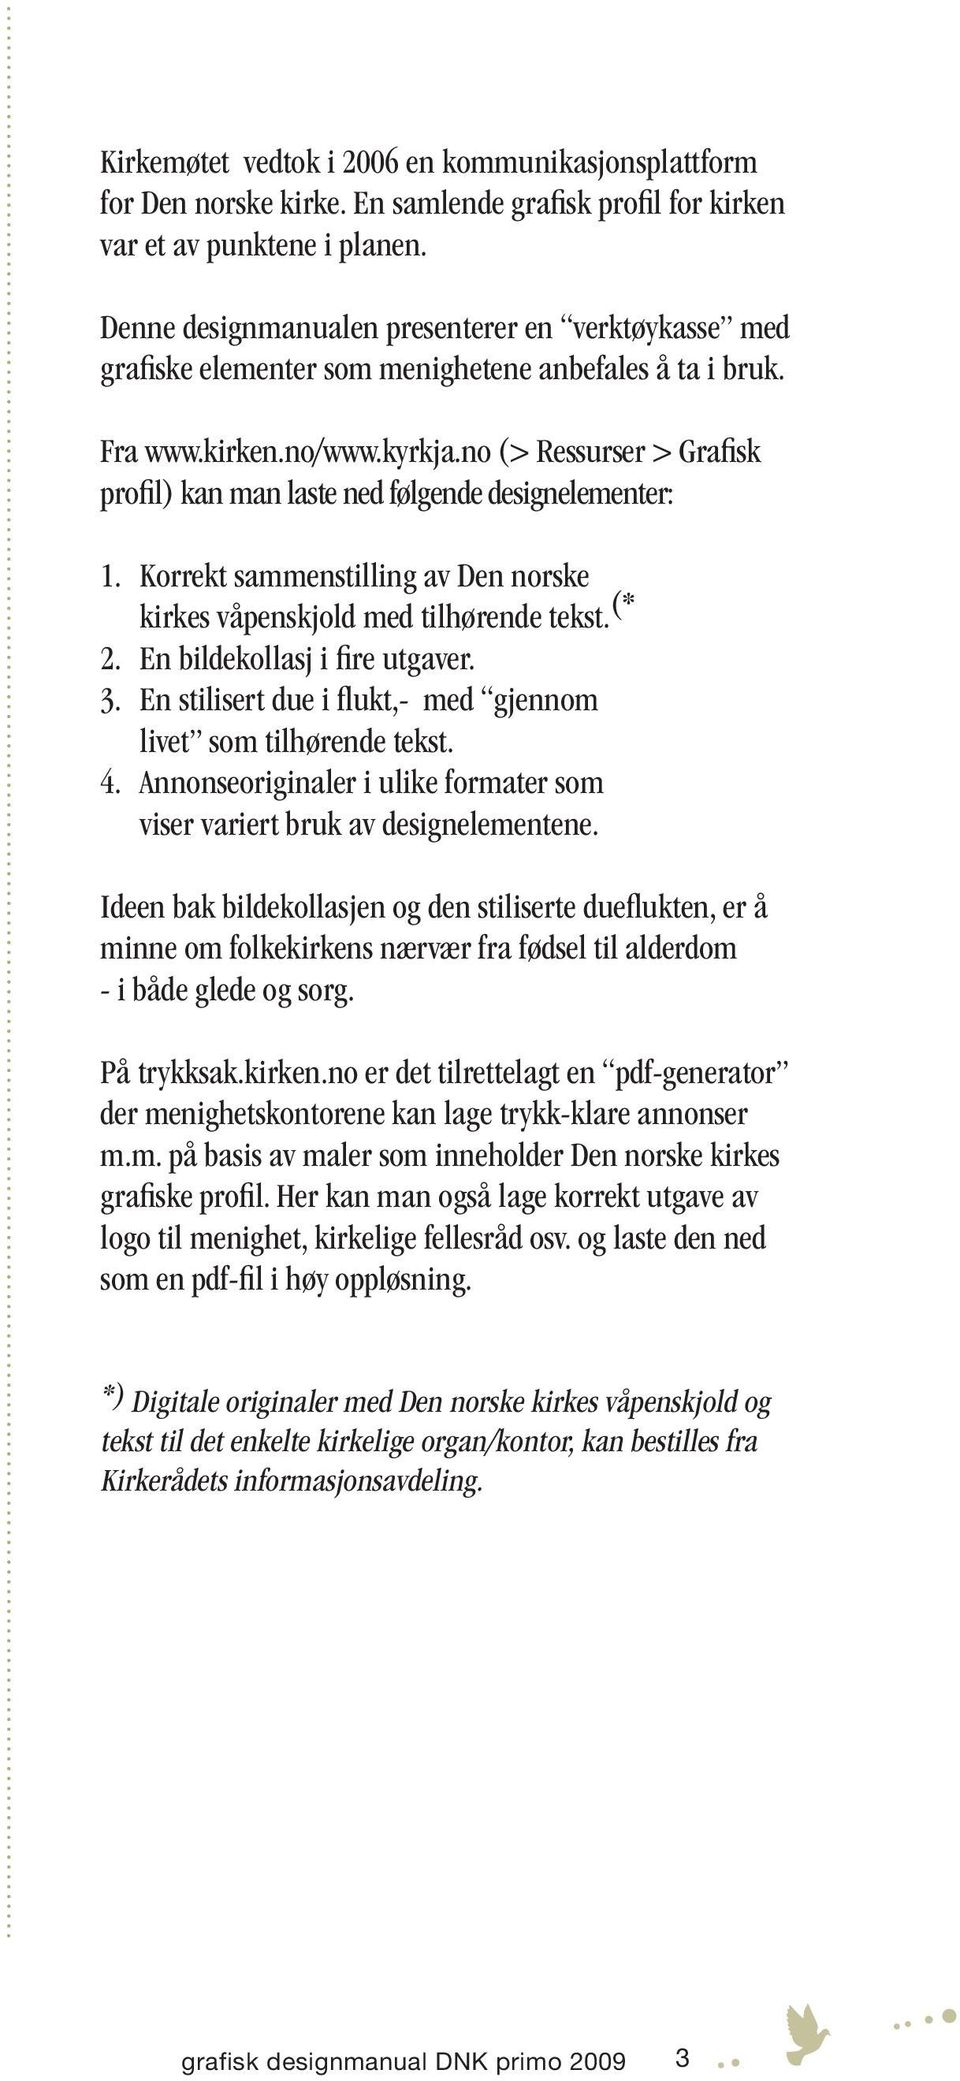 no (> Ressurser > Grafisk profil) kan man laste ned følgende designelementer: 1. Korrekt sammenstilling av Den norske kirkes våpenskjold med tilhørende tekst. (* 2. En bildekollasj i fire utgaver. 3.